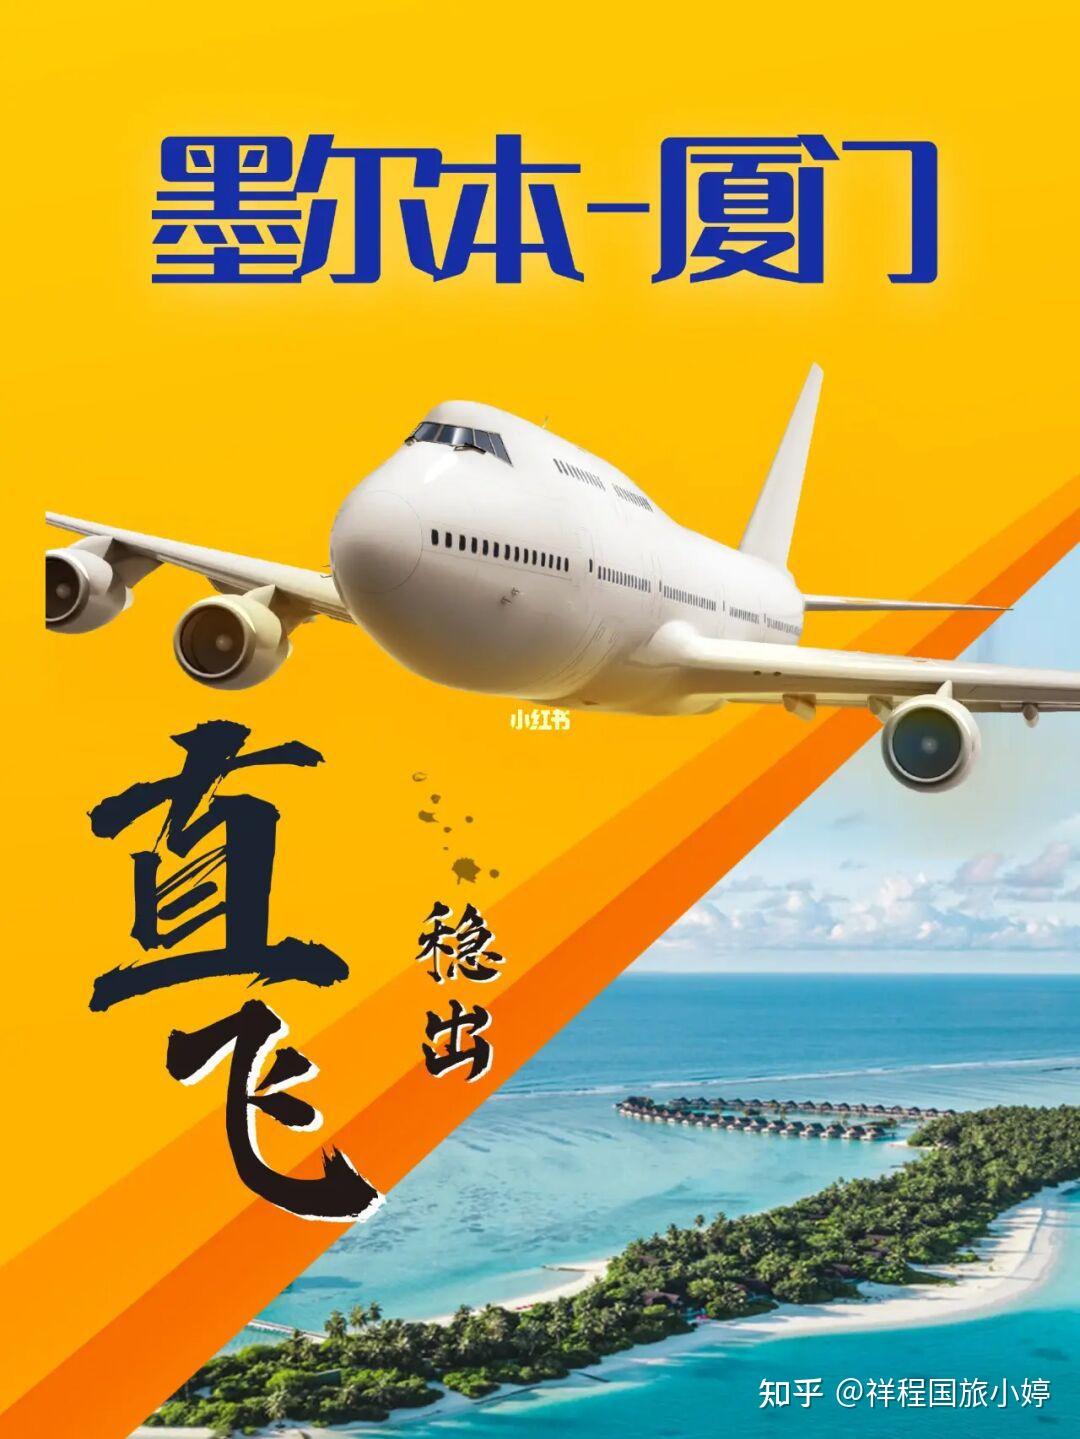 上海到澳洲机票查询？澳洲机票多少钱？-从上海到澳大利亚的飞机票大概多少钱?